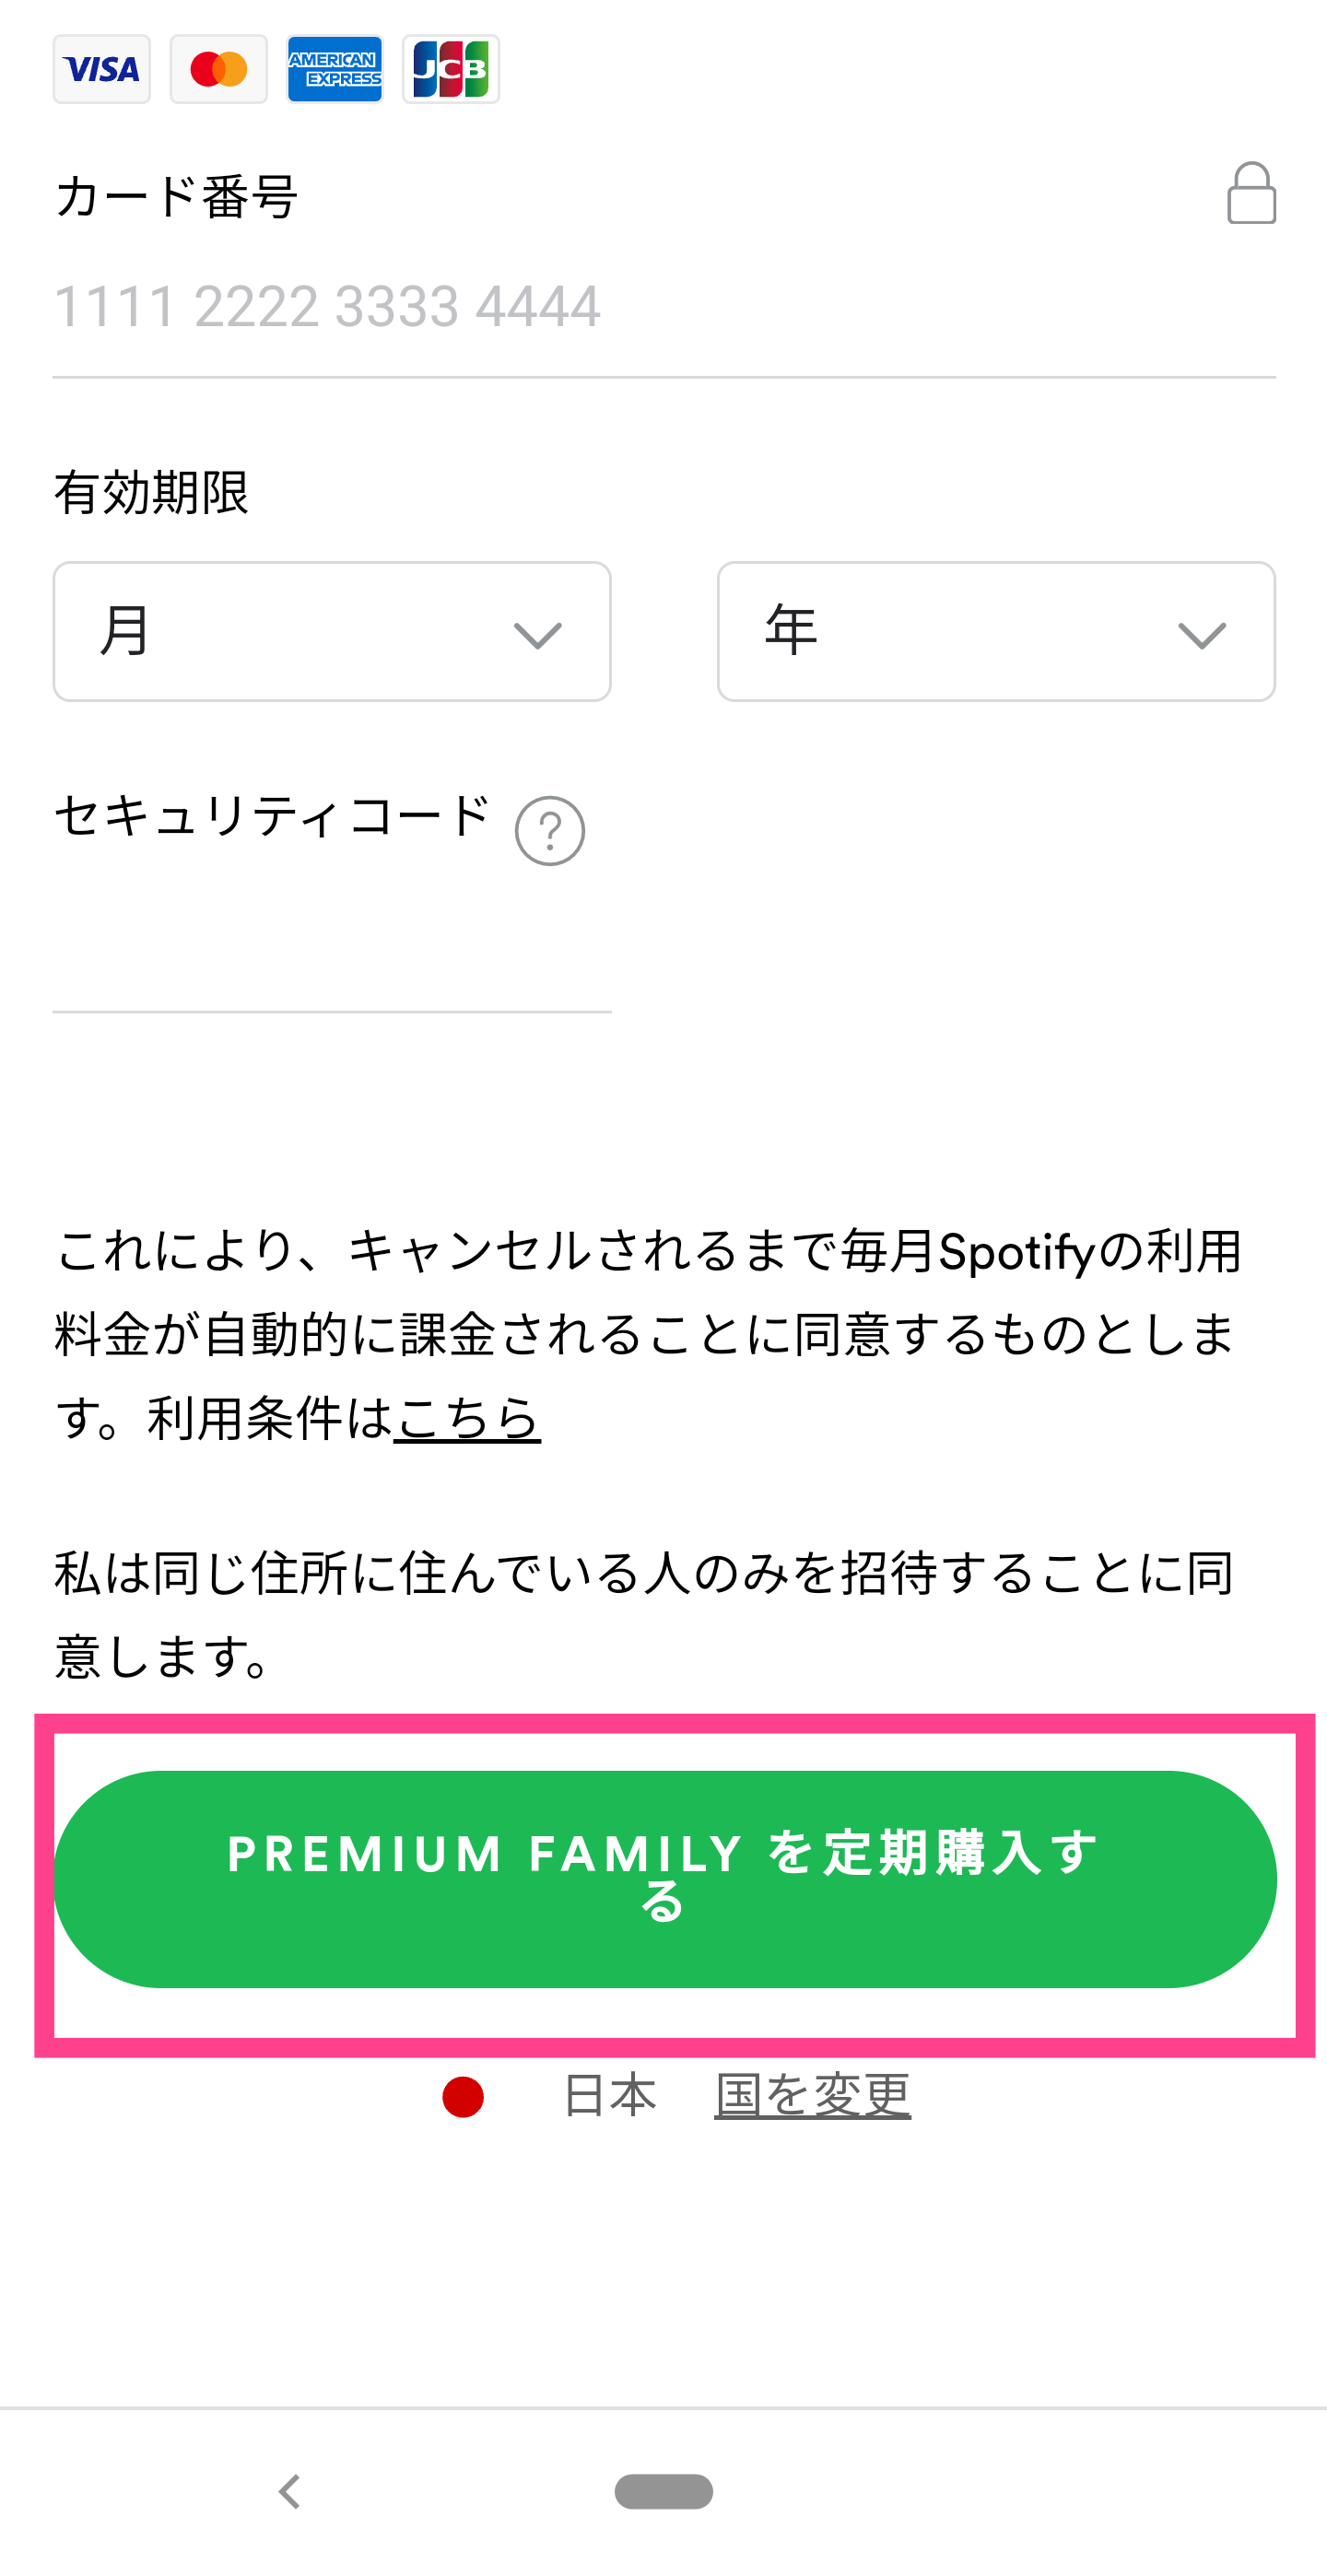 Premium-Family登録画面